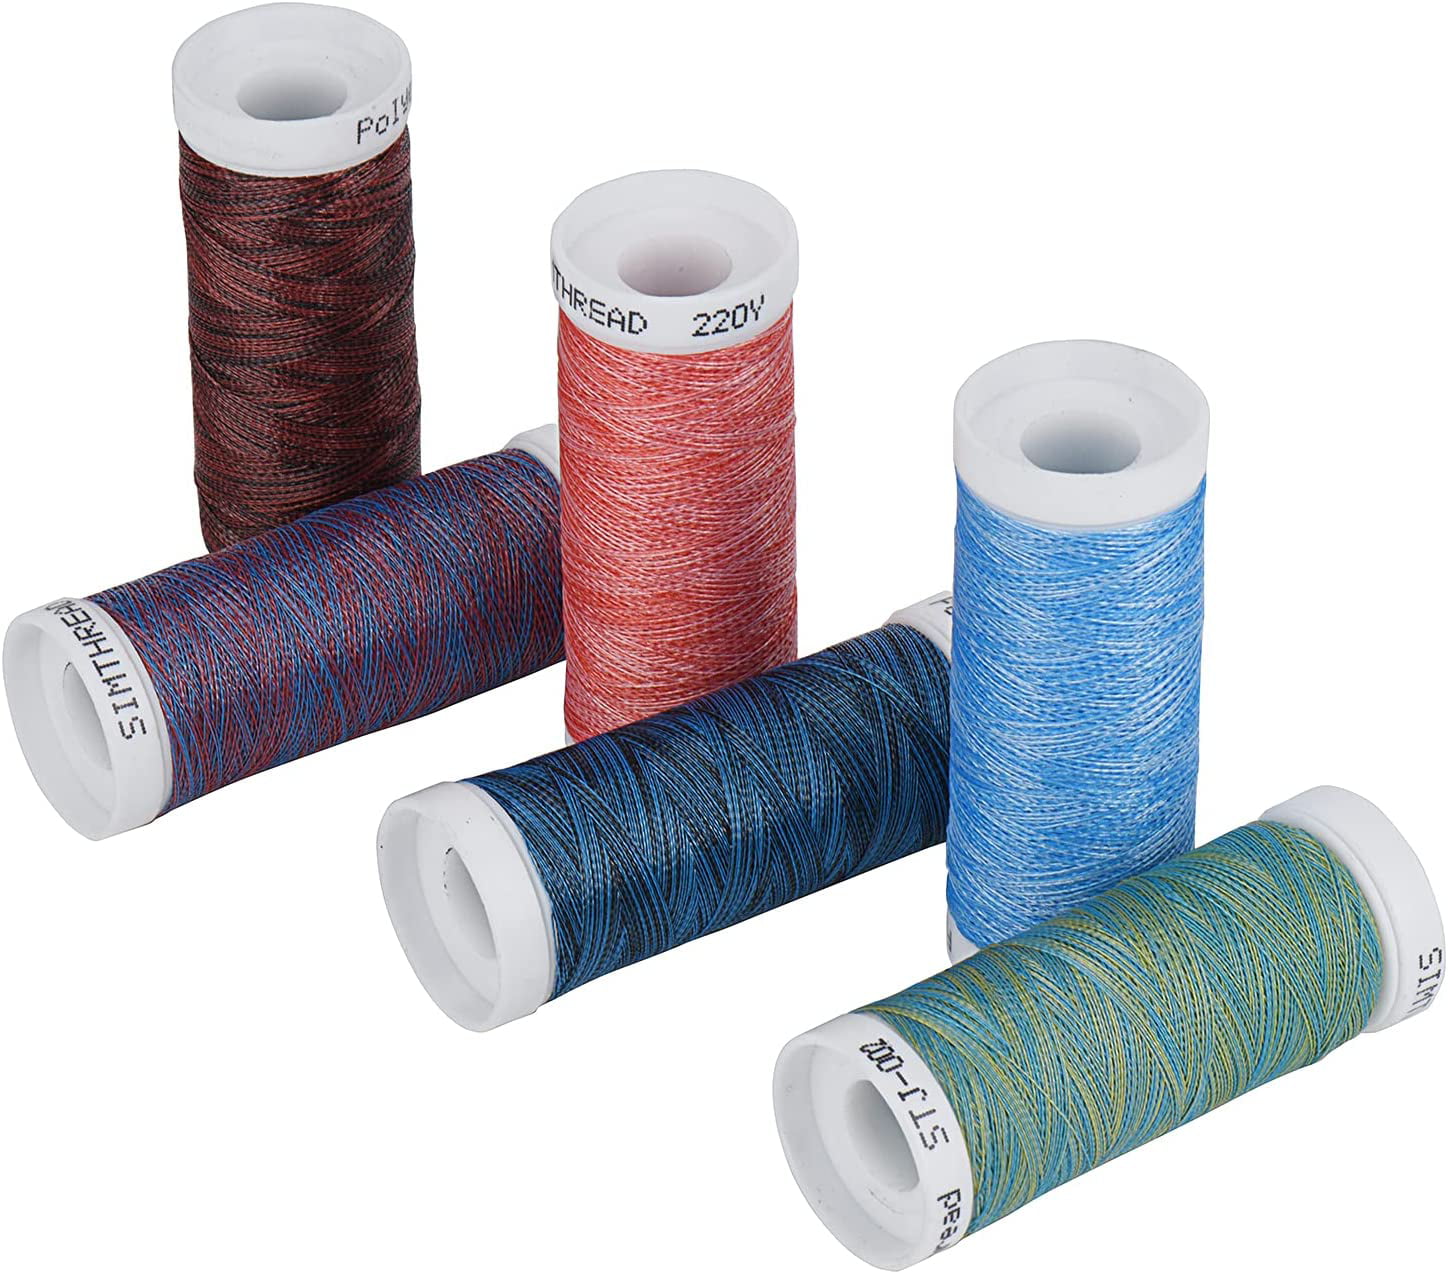 Gutermann 40wt Cotton Hand Quilting Thread – Red Rock Threads